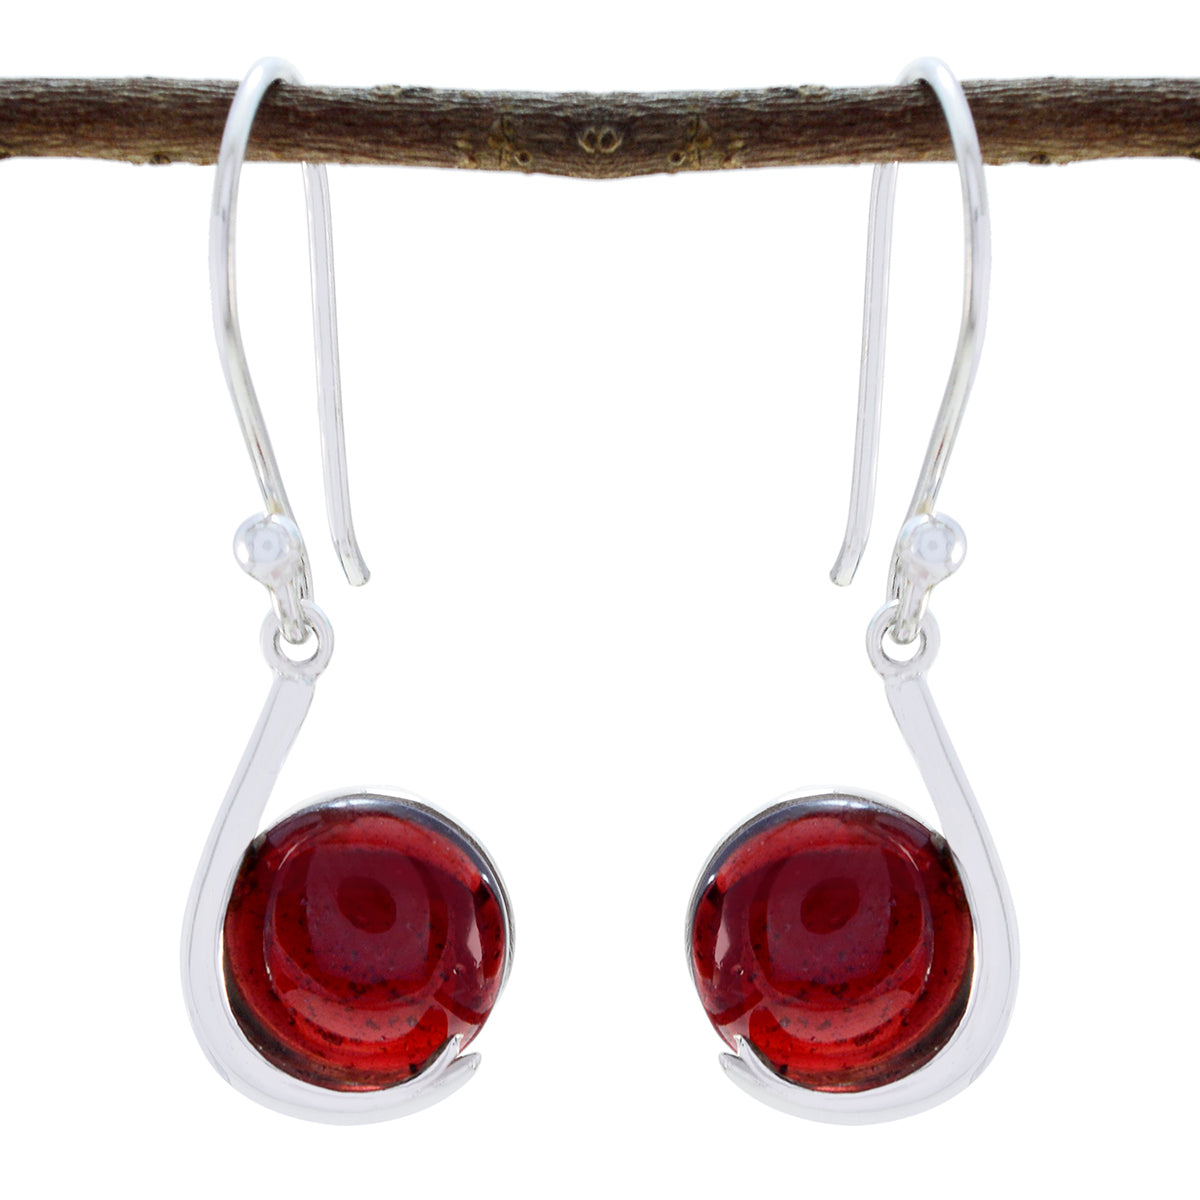 Riyo Good Gemstones round Cabochon Red Garnet Silver Earring gift for mom